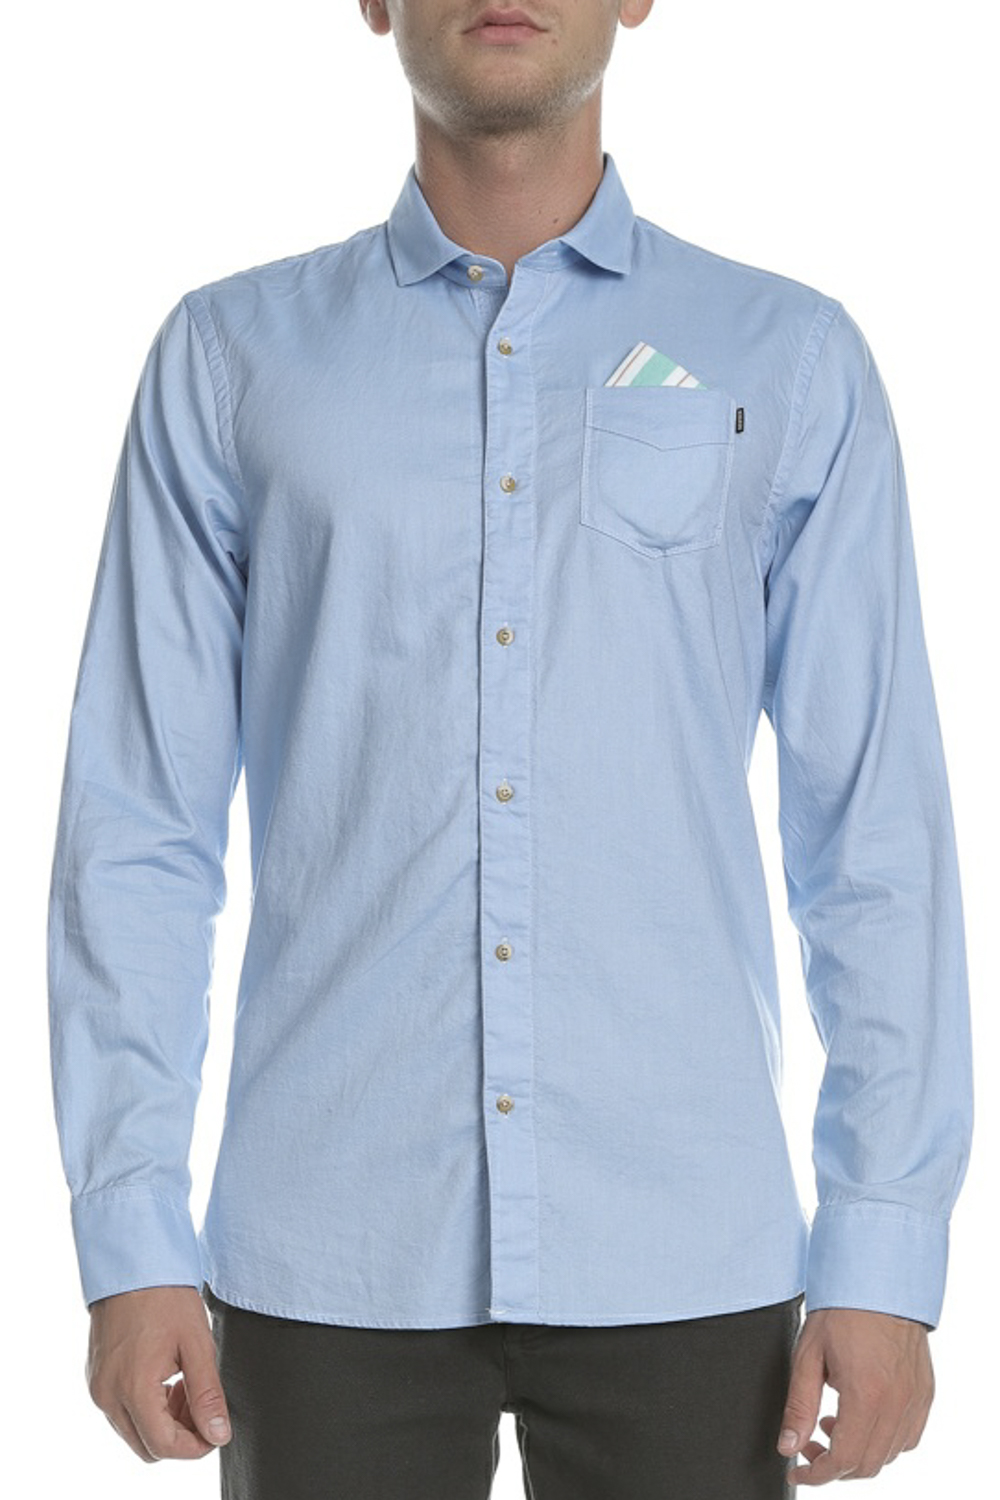 Ανδρικά/Ρούχα/Πουκάμισα/Μακρυμάνικα SCOTCH & SODA - Ανδρικό μακρυμάνικο πουκάμισο Classic oxford γαλάζιο